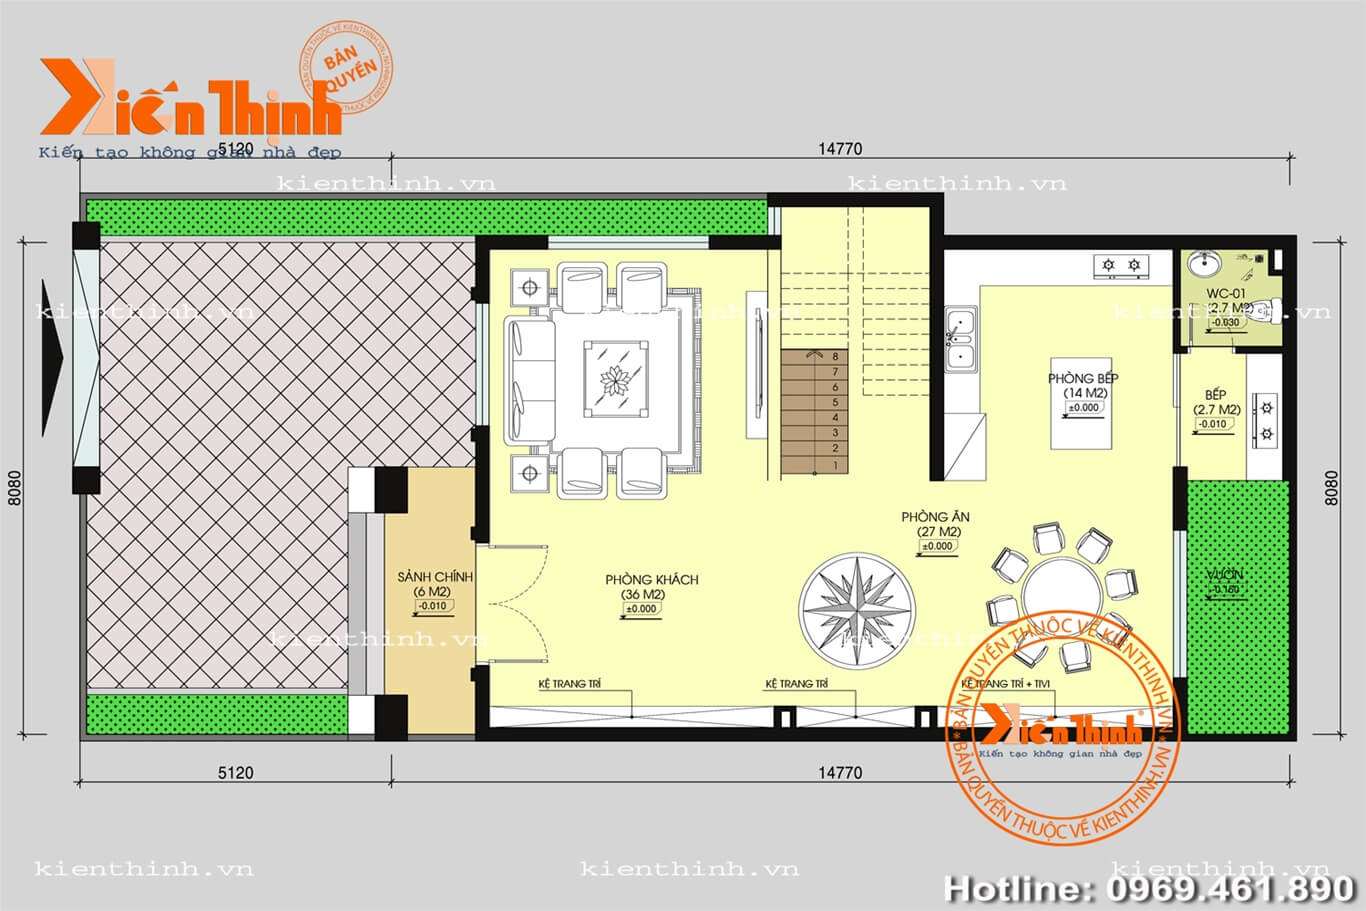 Thiết kế mẫu biệt thự nhà vườn hiện đại mái Thái 3 tầng đẹp BT1738